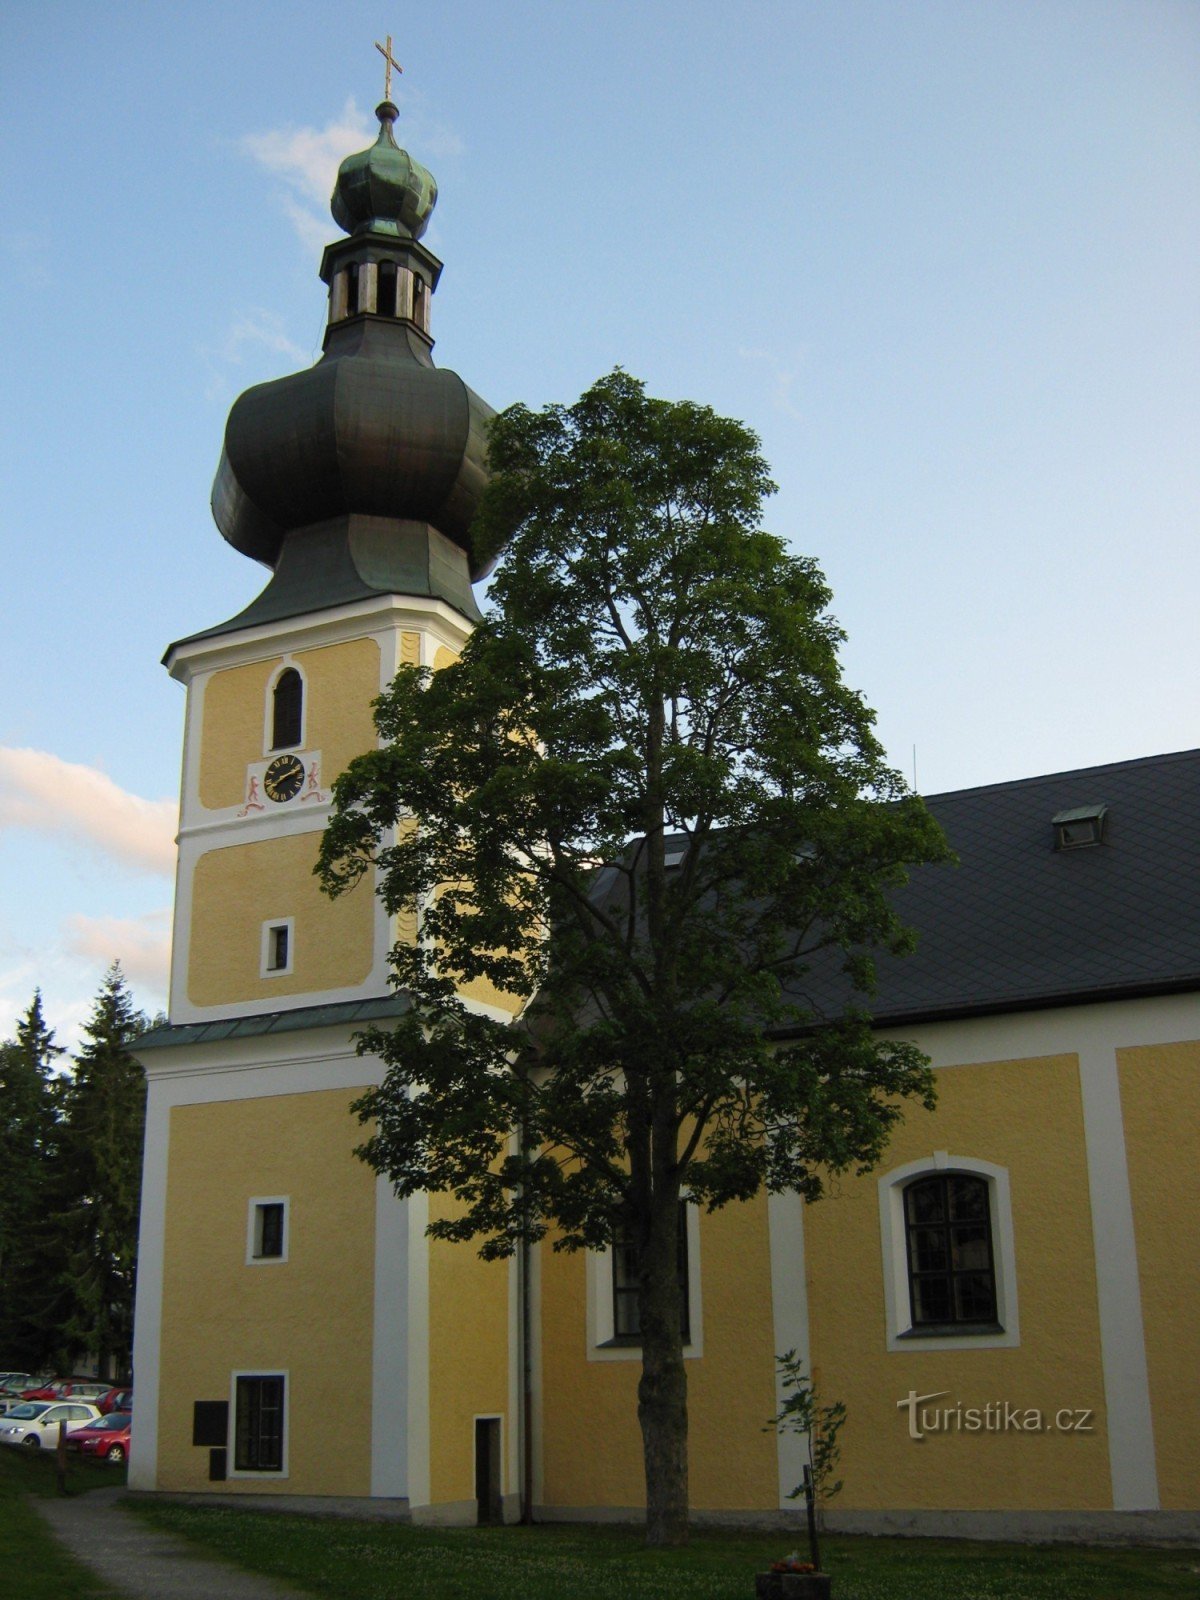 Srni - Nhà thờ St. Trinity